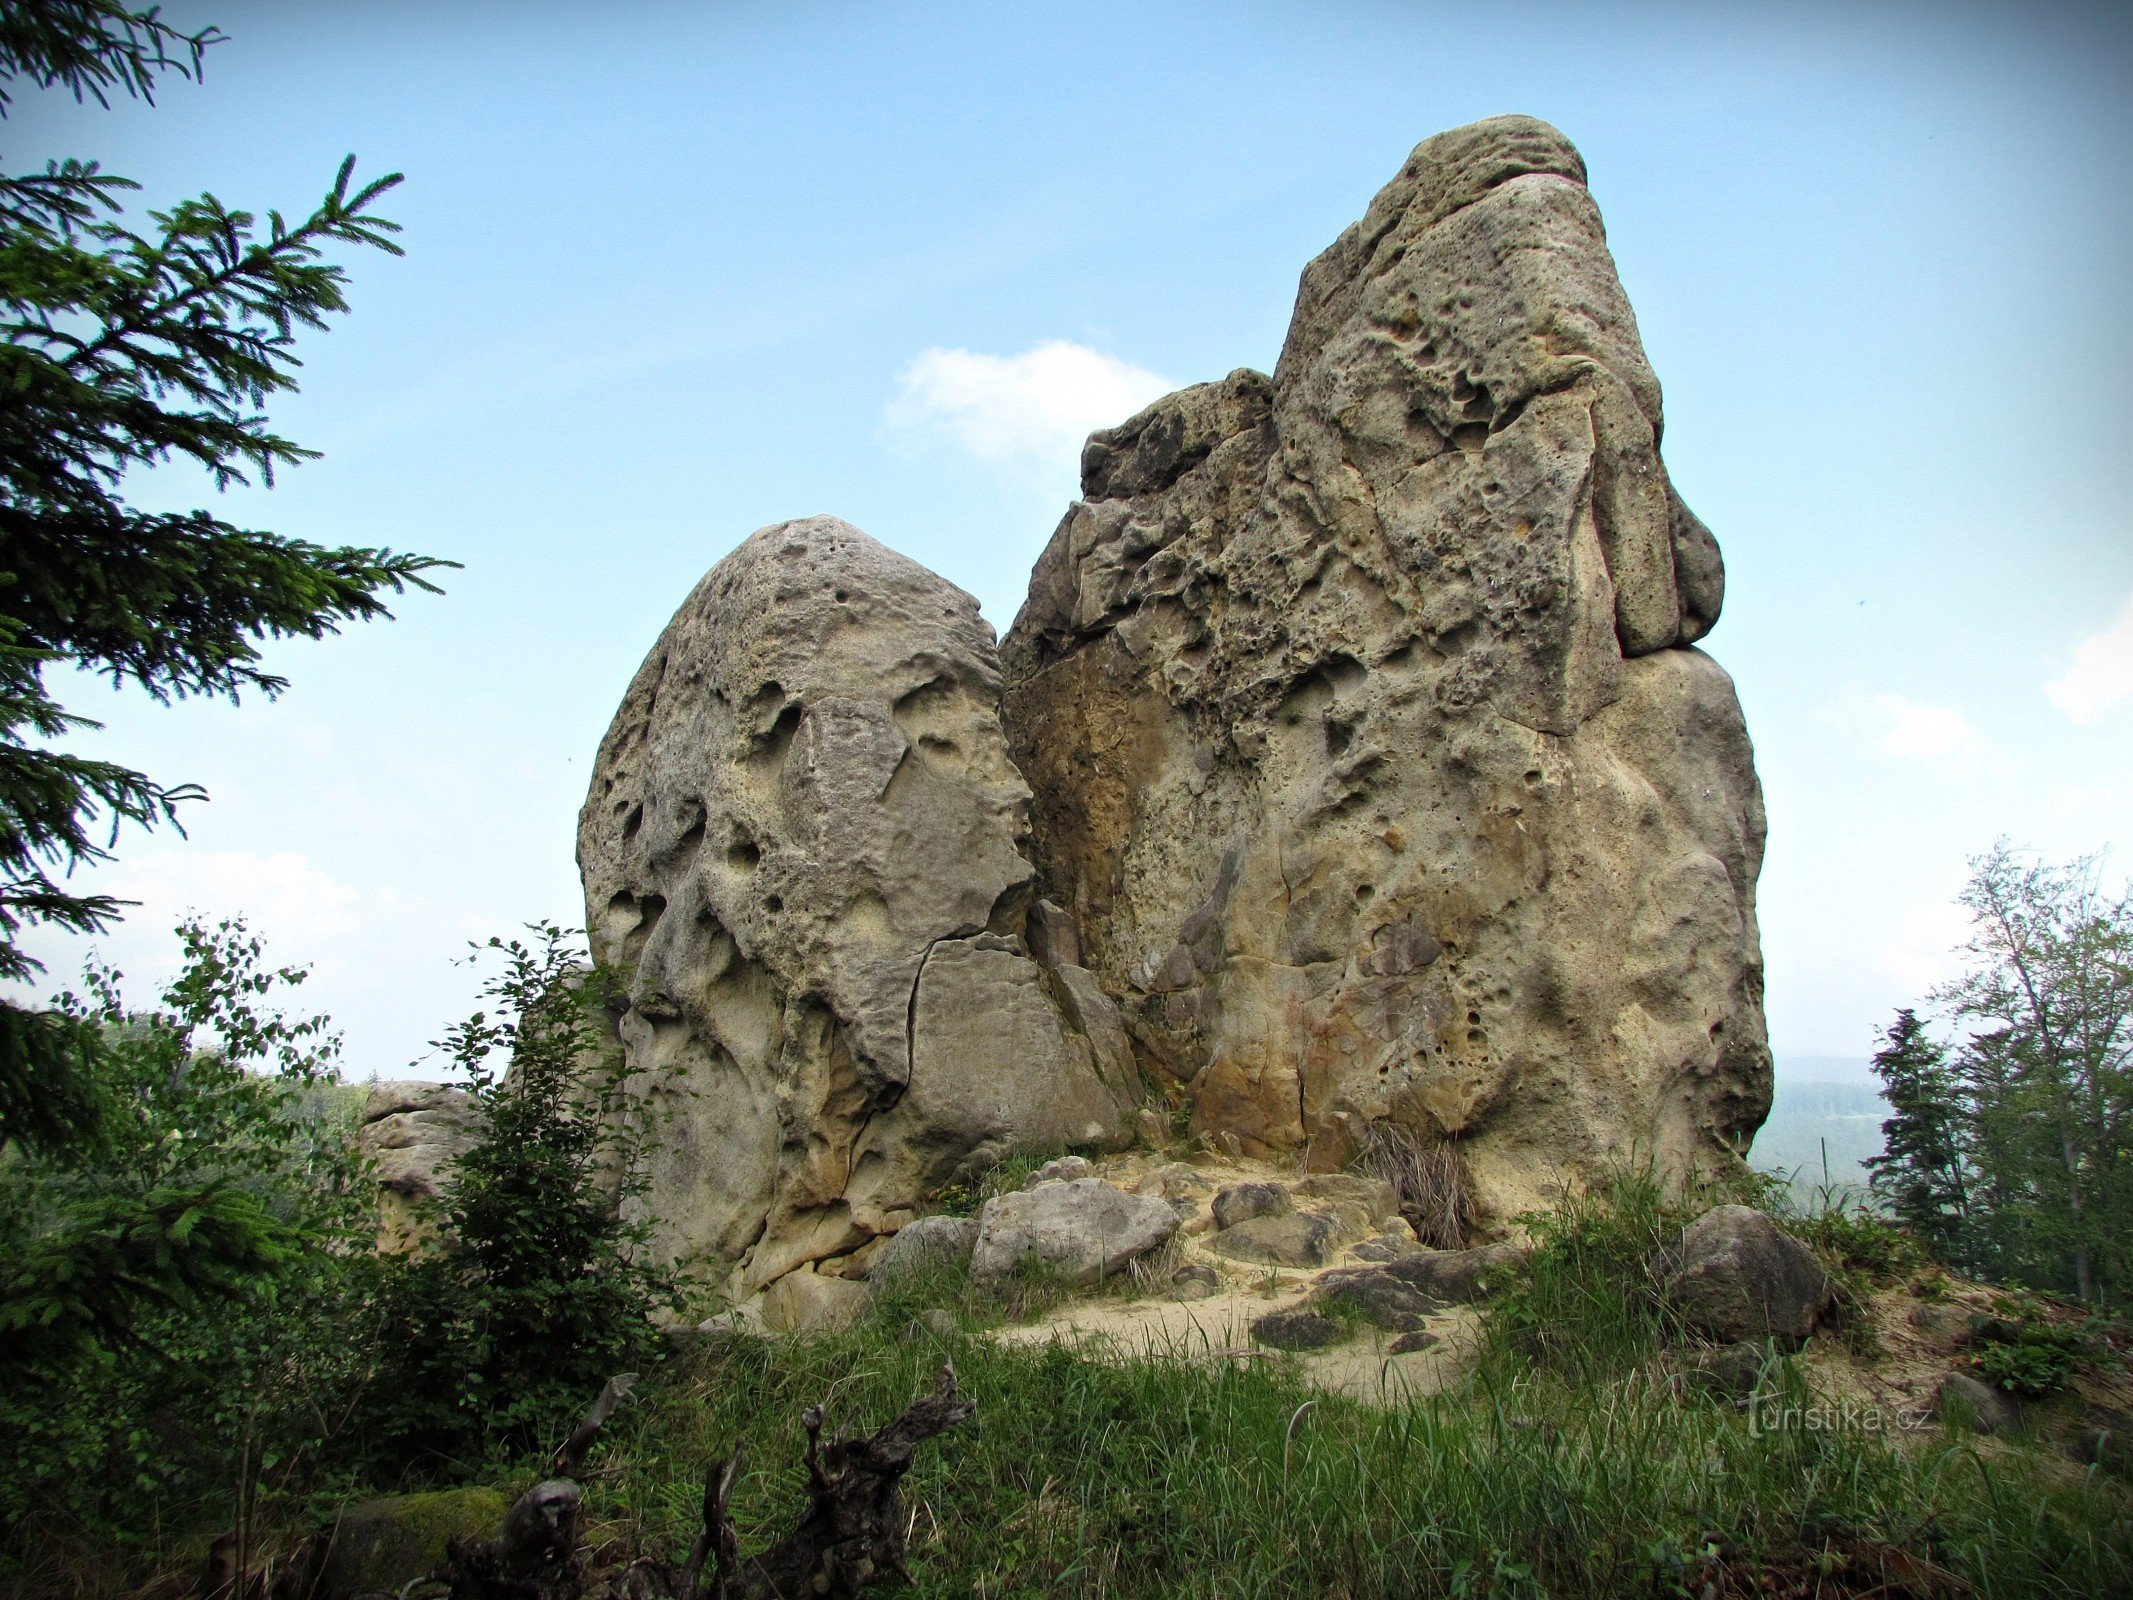 Στα βράχια κοντά στο Hošťálková, στο Kopná και στο Vrzavá skály